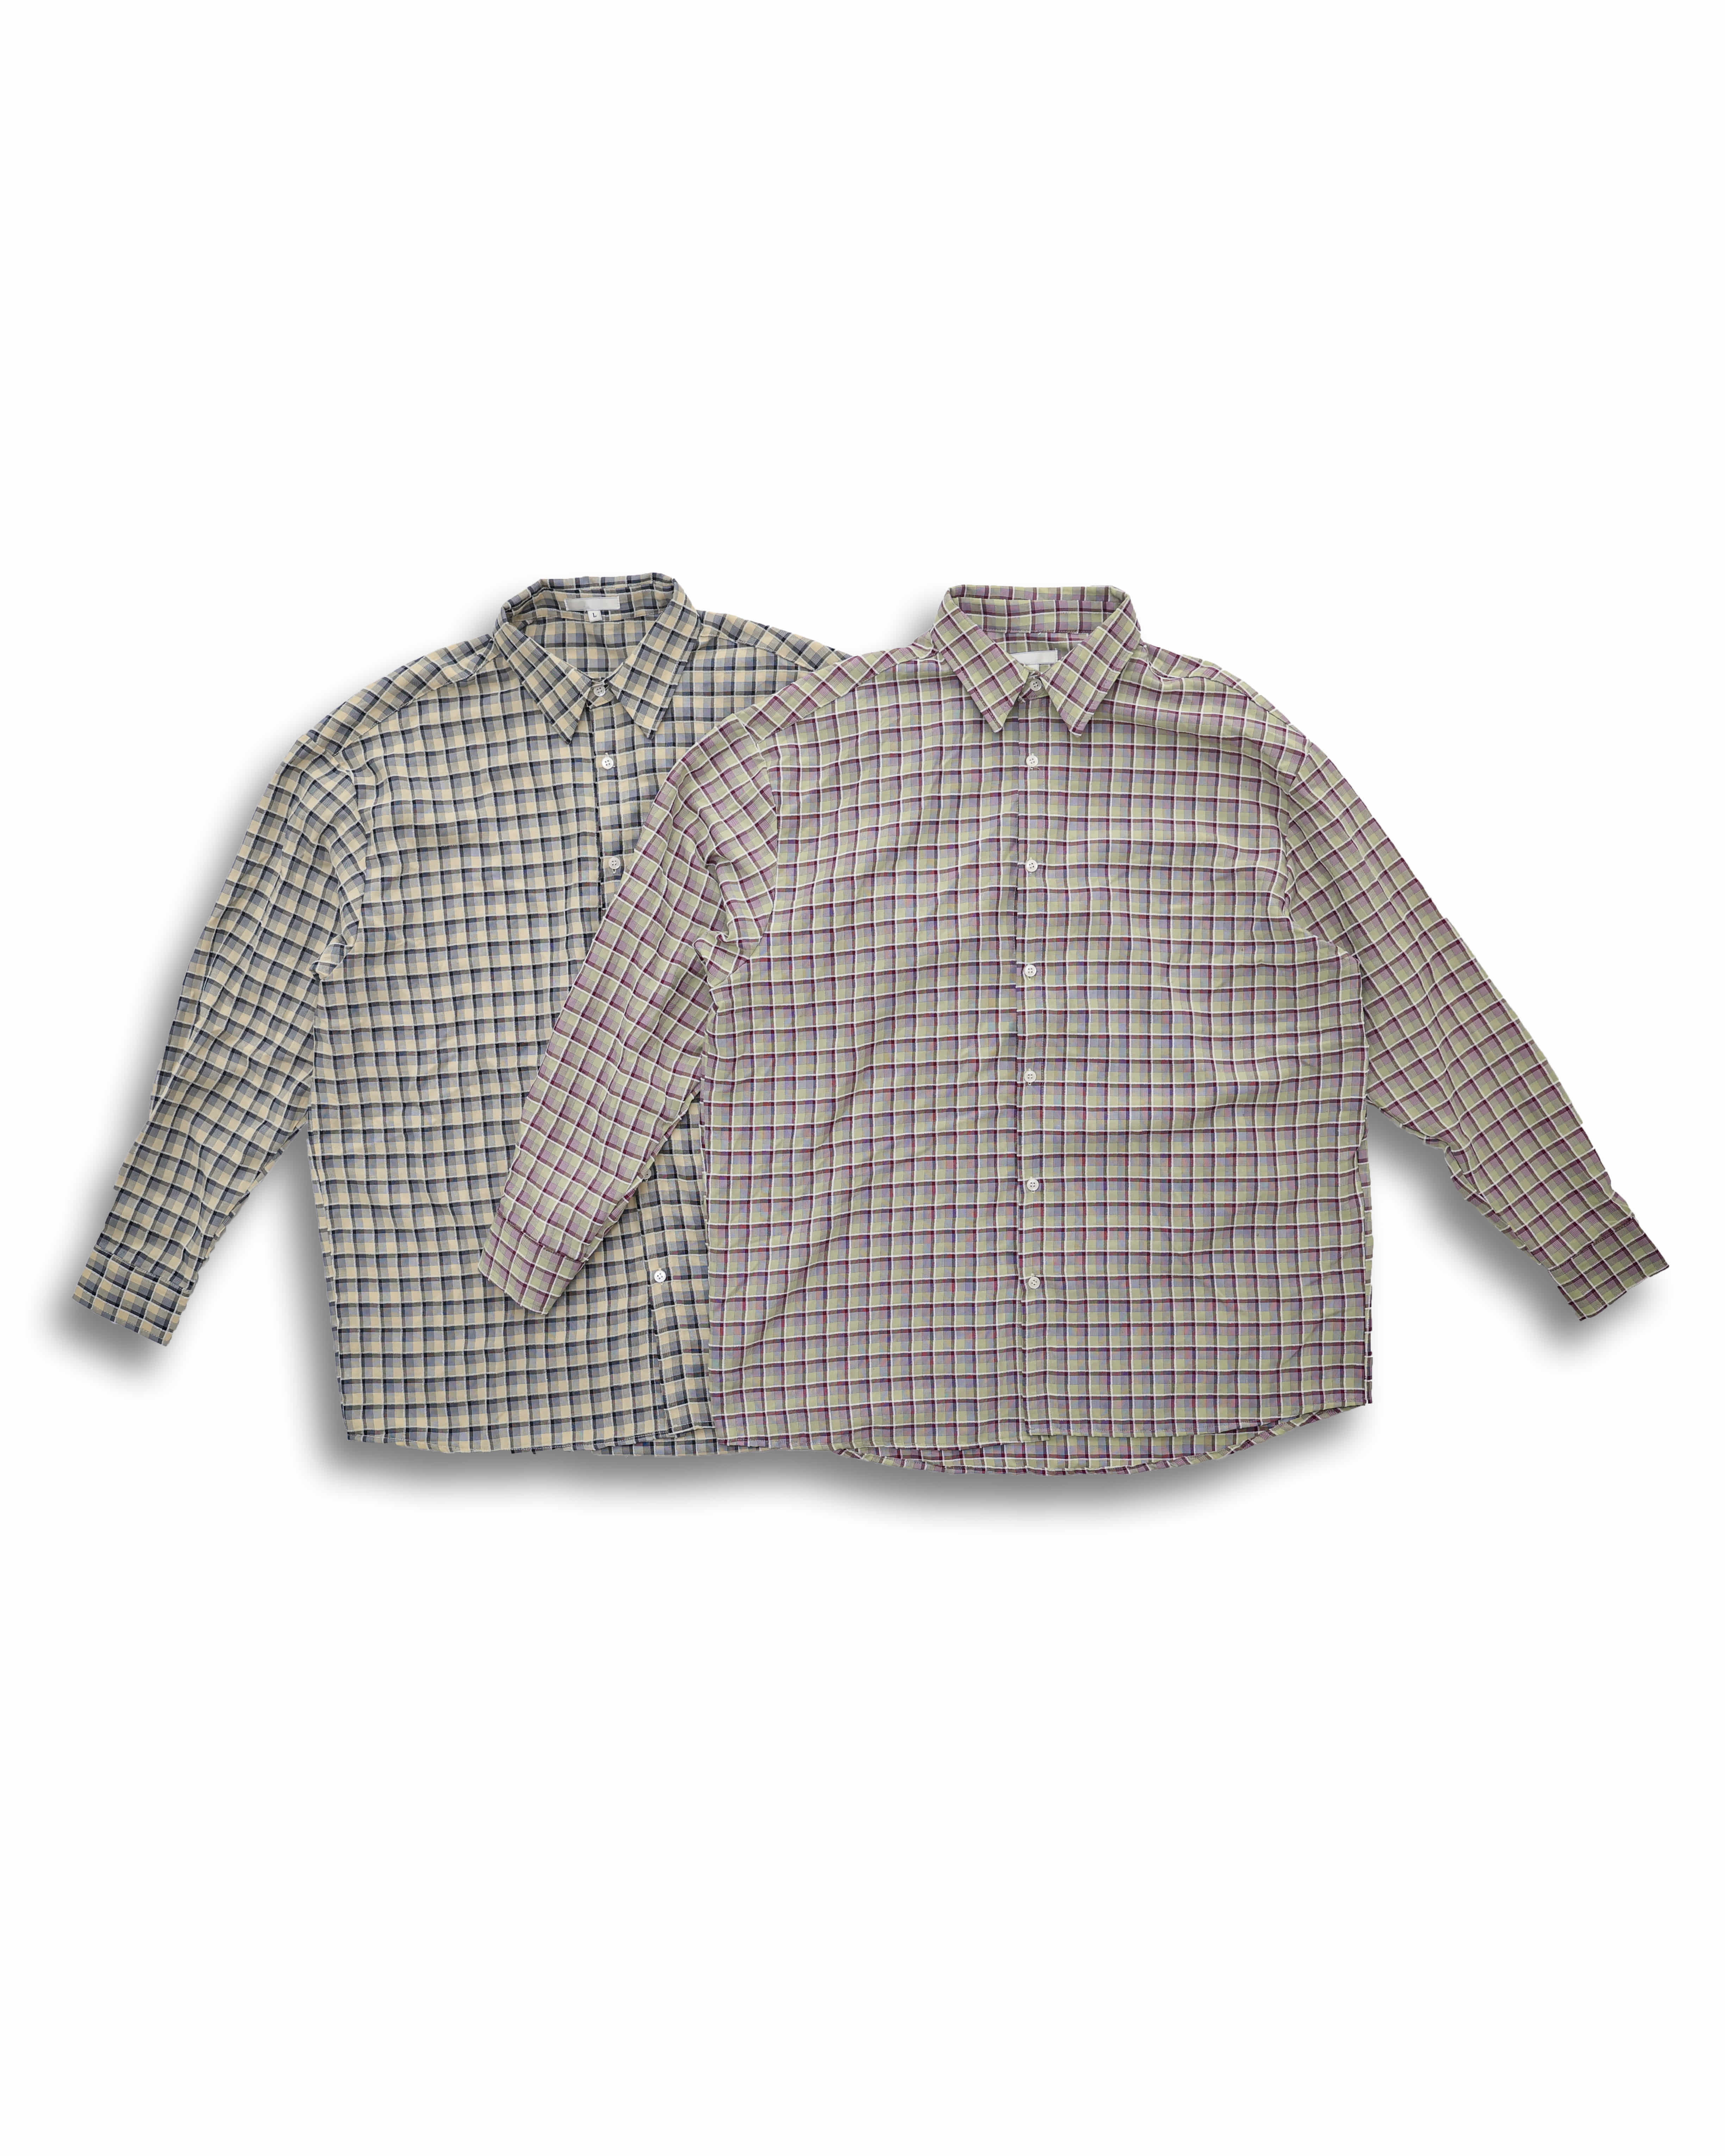 Soft Cotton Check Shirts (Violet/Beige)